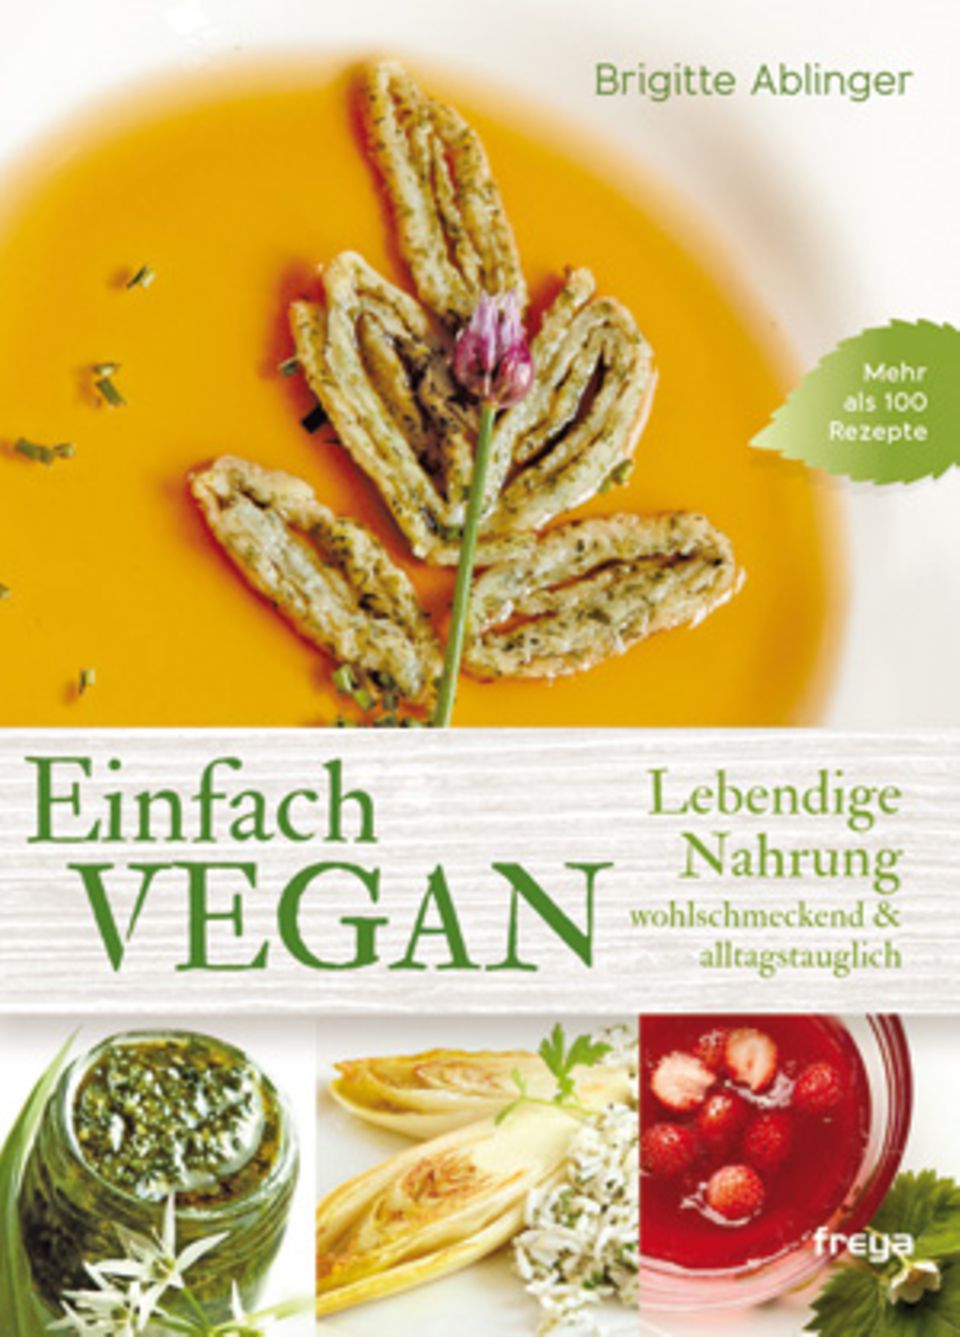 Brigitte Ablinger: "Einfach vegan. Lebendige Nahrung, wohlschmeckend & alltagstauglich" (Freya Verlag 2015; 16,90 Euro)